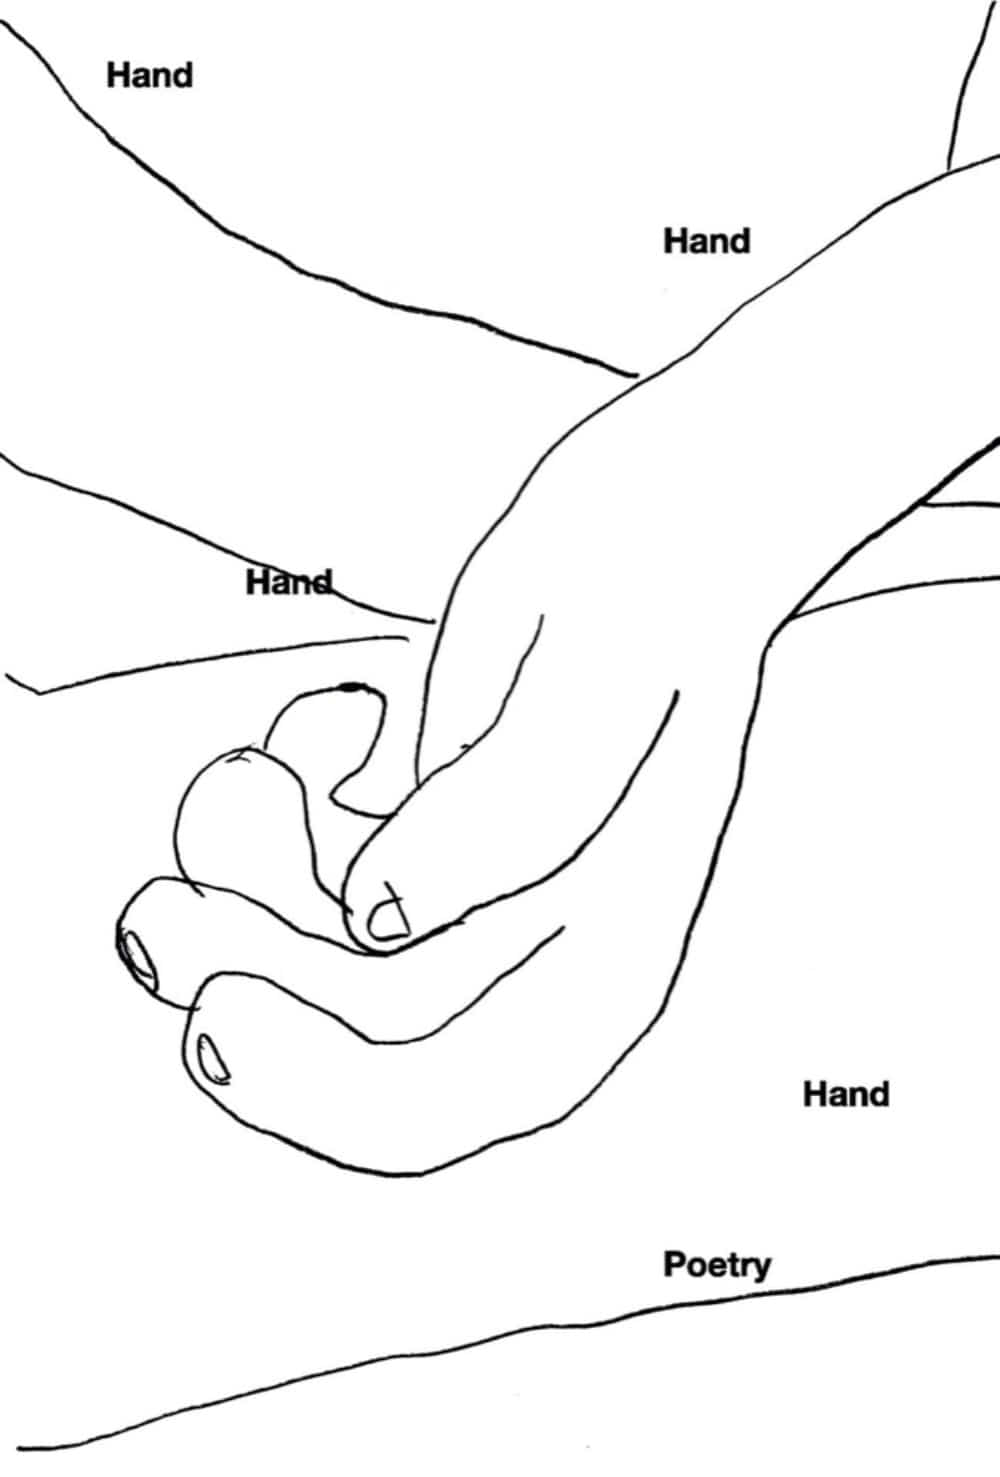 [3차 입고] Hand, Hand, Hand, Hand, Poetry · NOWWE